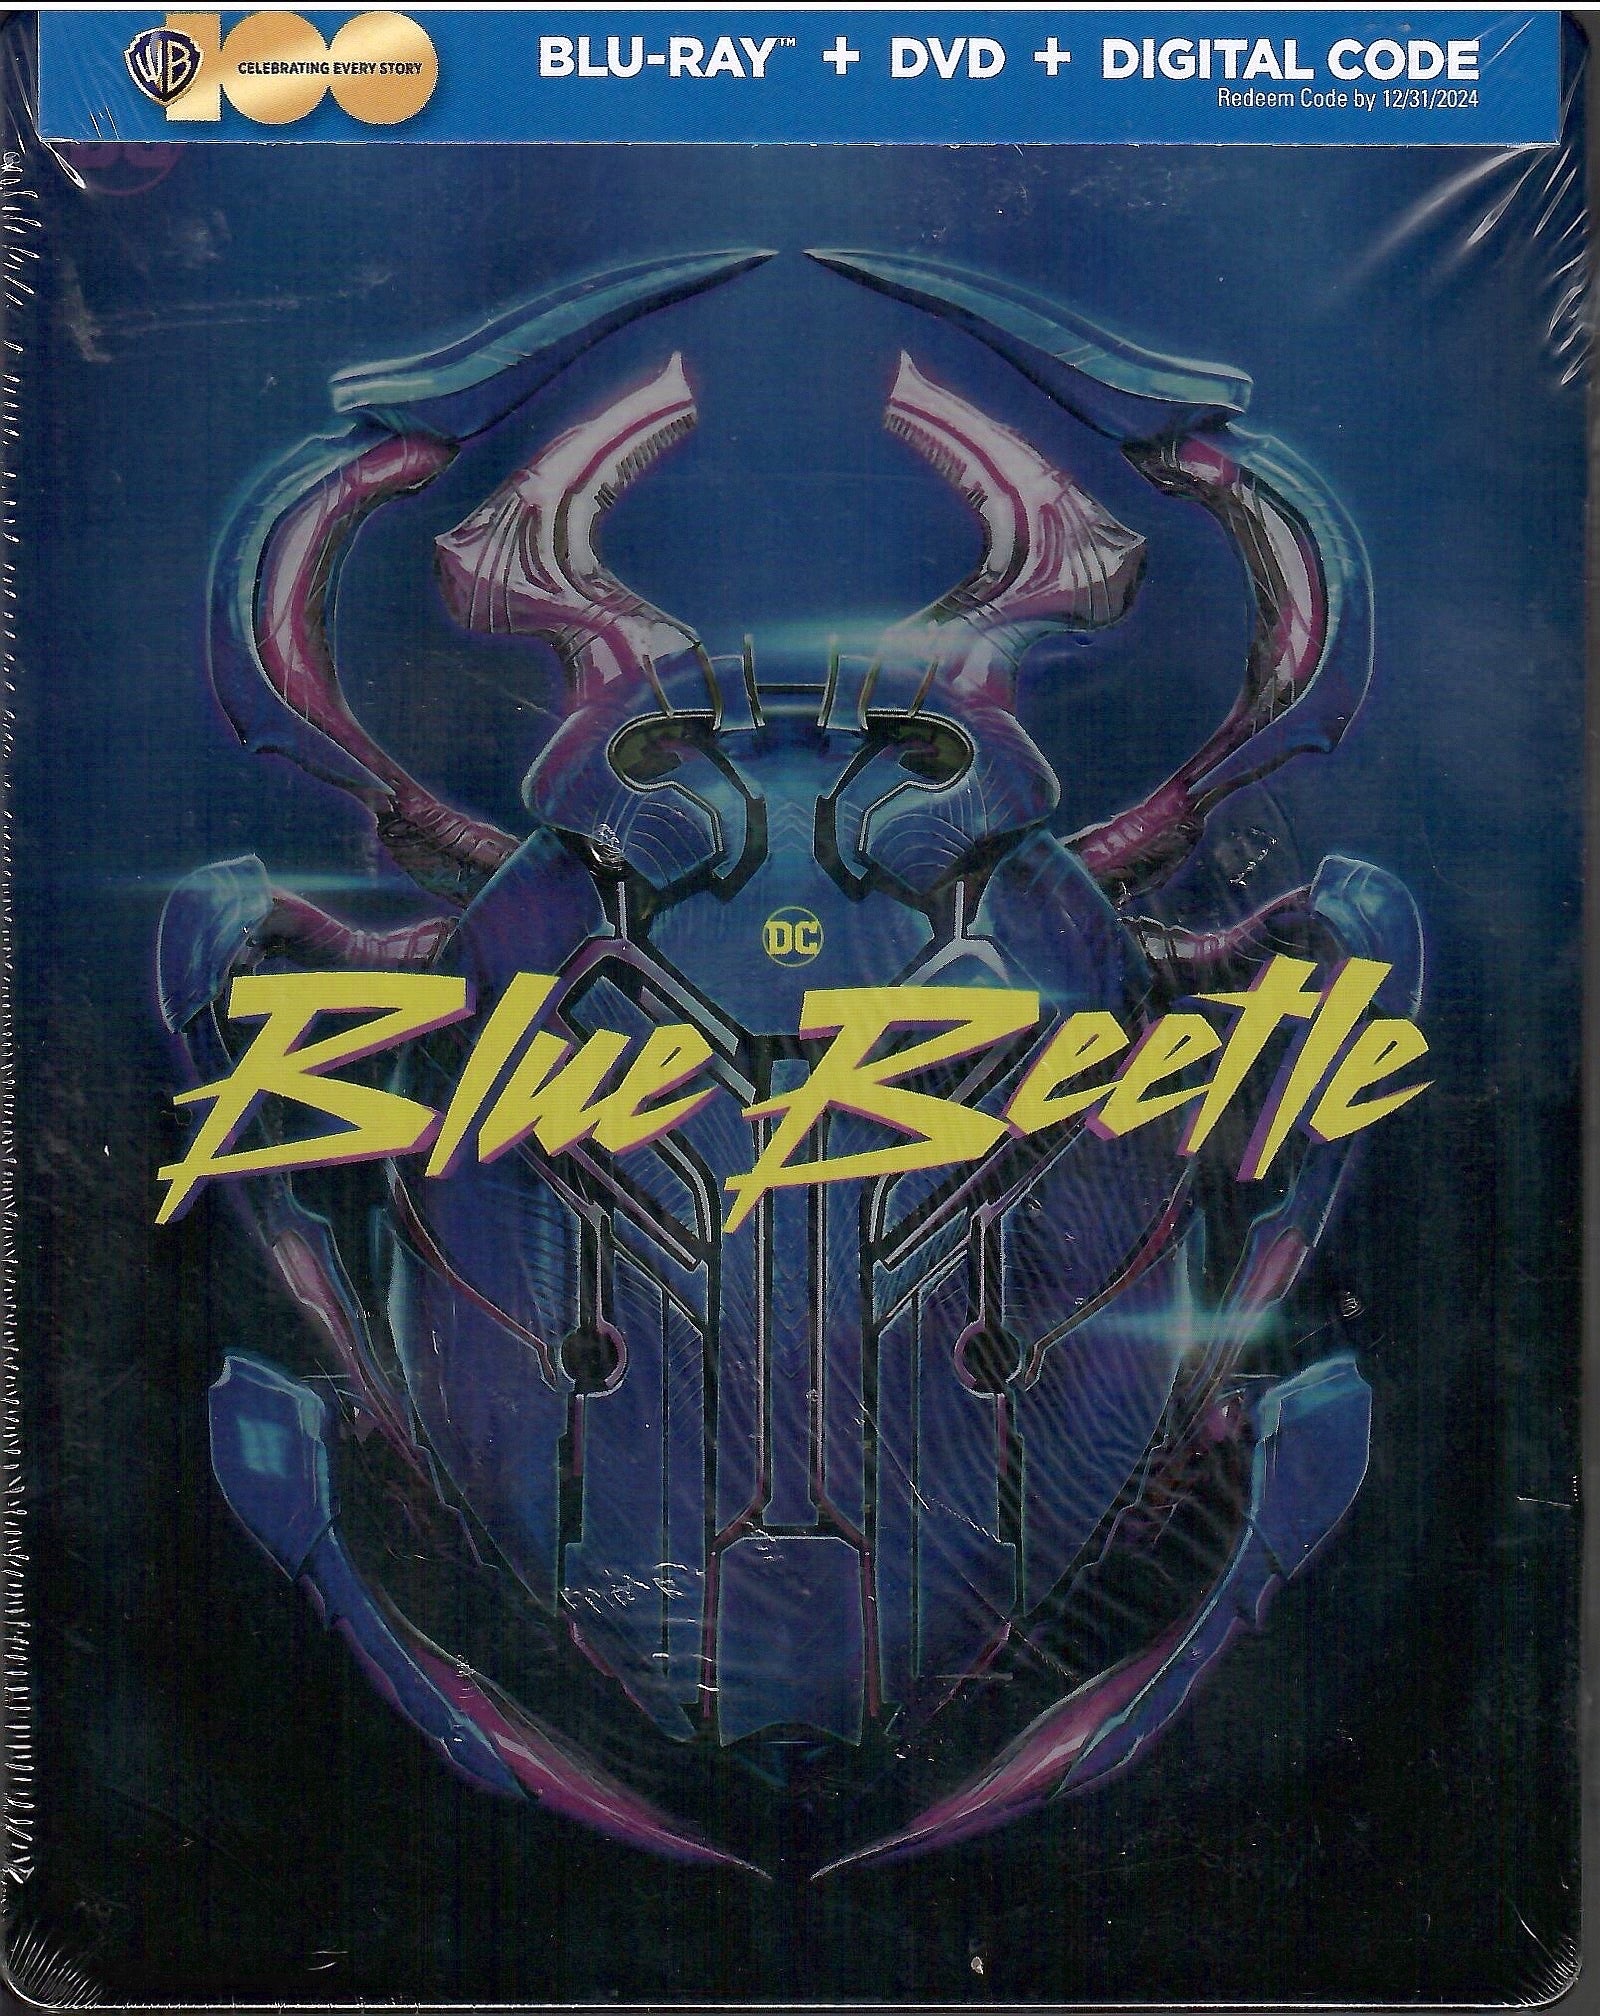 Blue Beetle (Walmart Exclusive) (Steelbook Blu-ray + DVD + Digital Copy)